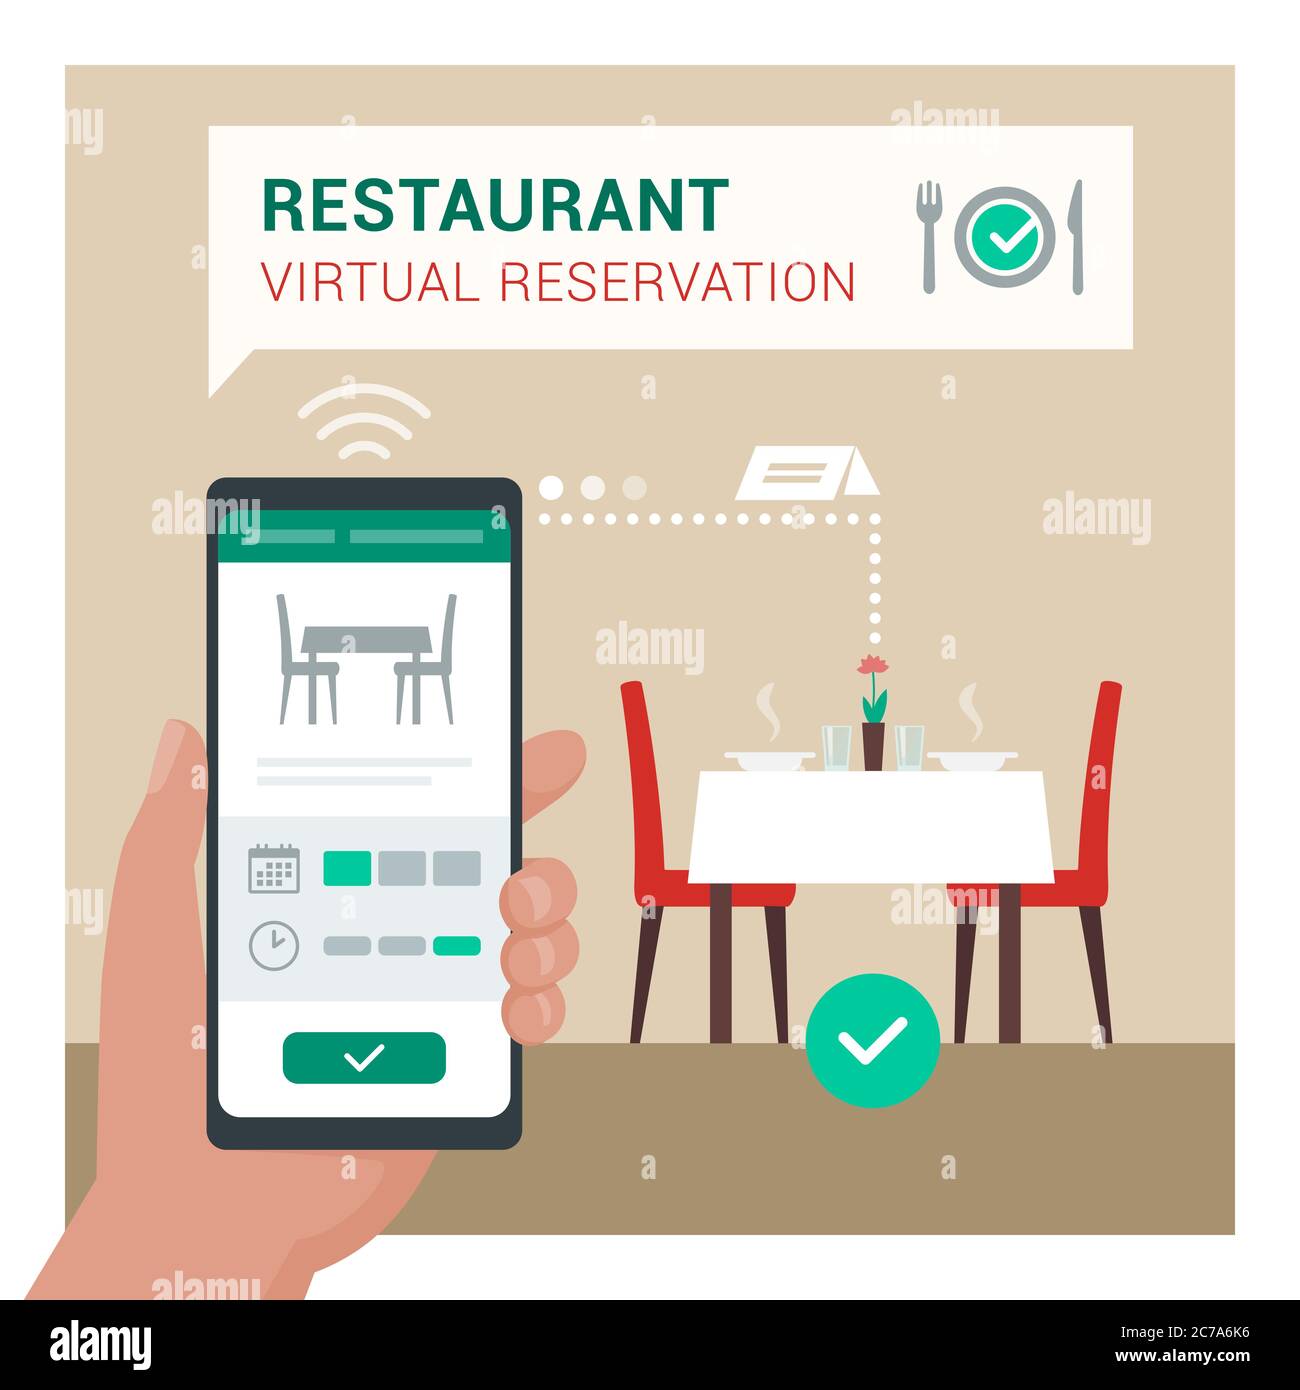 Prenotazione virtuale del ristorante: L'utente prenota un tavolo al ristorante utilizzando un'app mobile sul suo smartphone Illustrazione Vettoriale